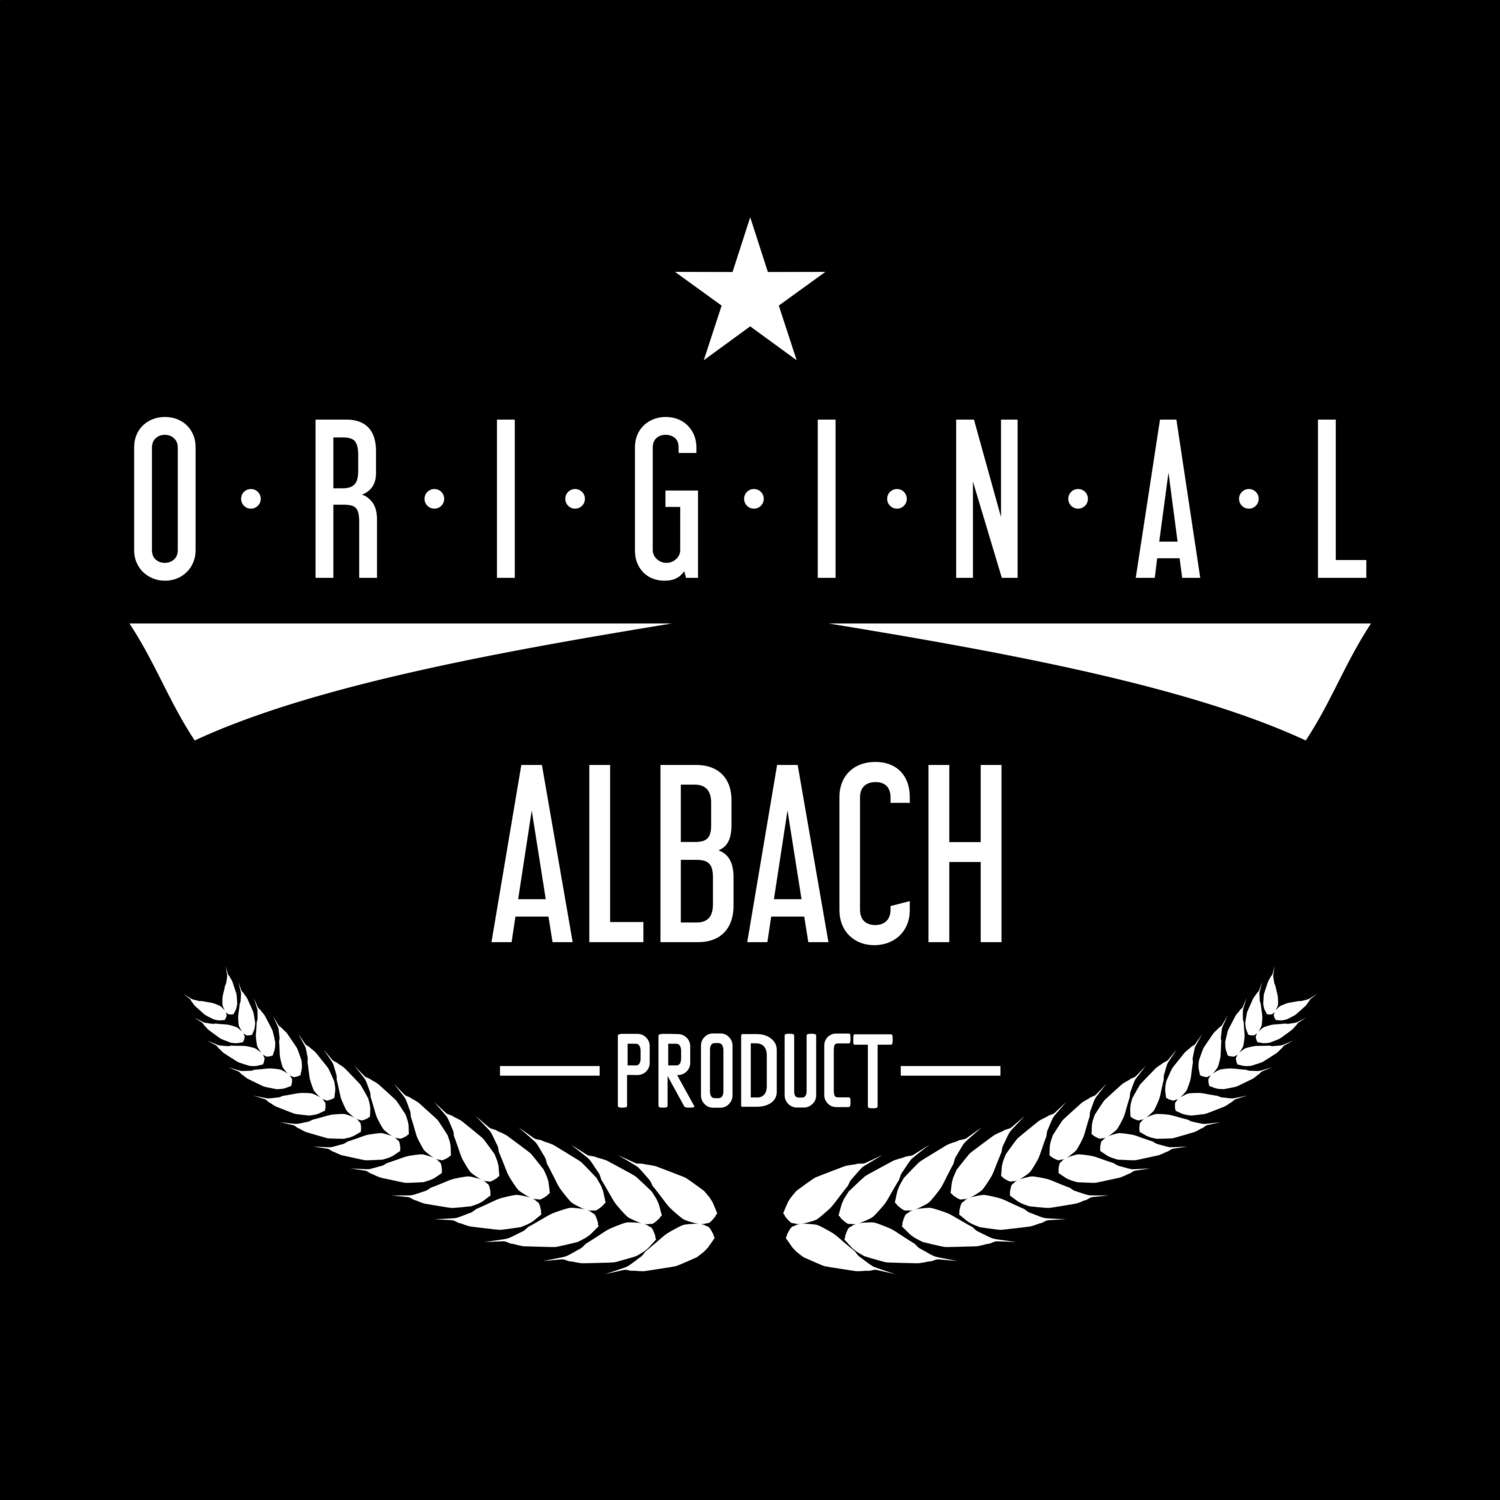 Albach T-Shirt »Original Product«